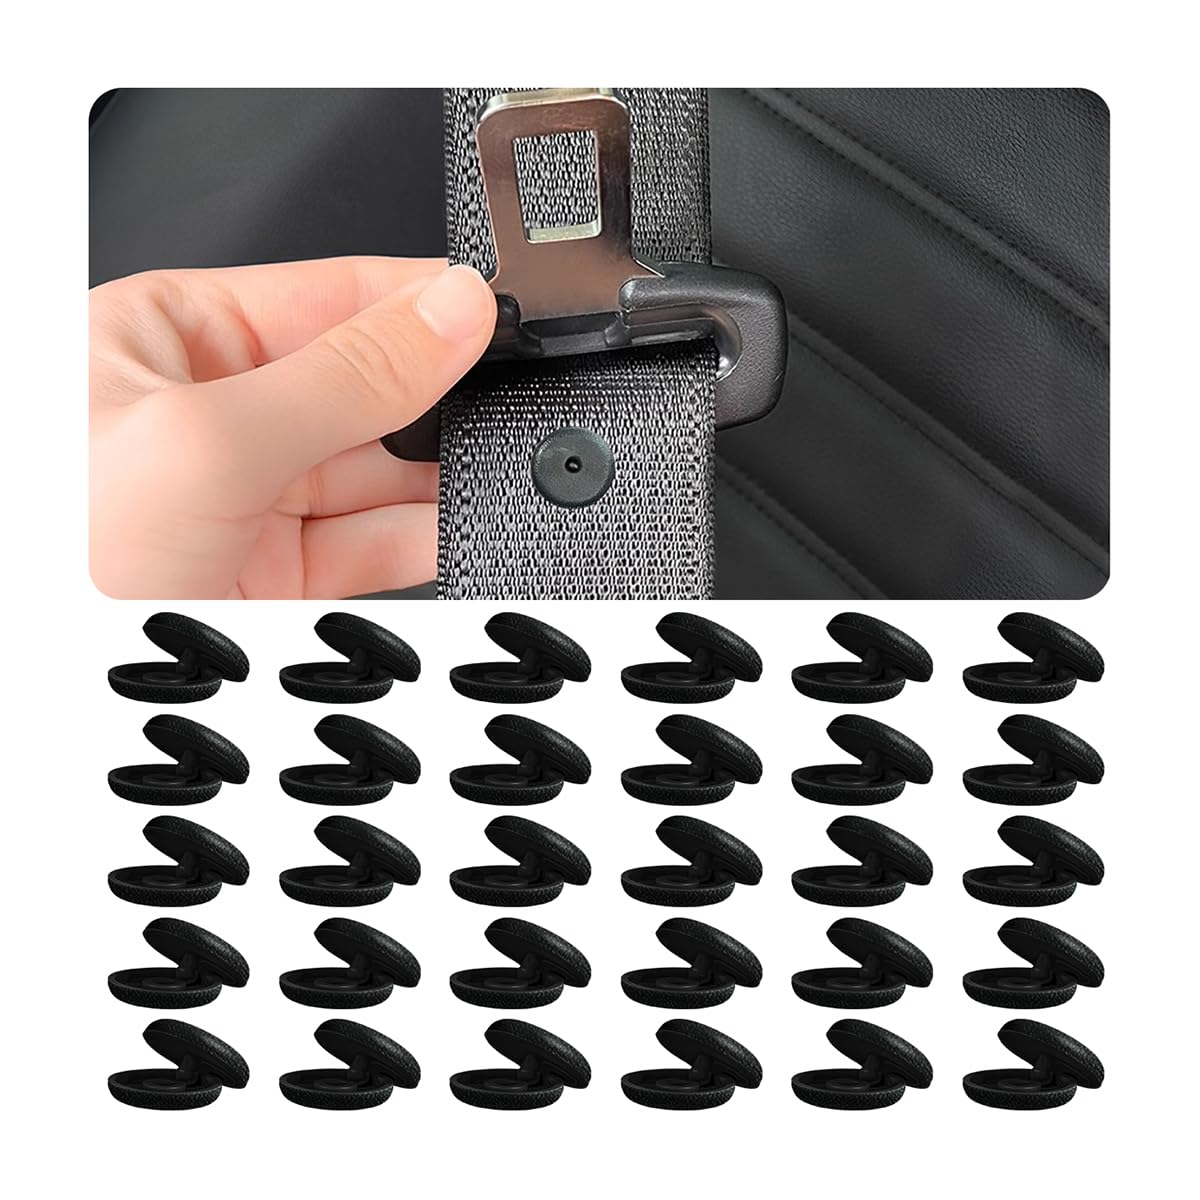 JNNJ 30 Stück Gurt Knopf Für Autogurte Sicherheitsgurt Stopper, Auto-Sicherheitsgurt-Verschluss-Stopper-Knöpfe, Kunststoff-Knöpfe Für Auto, Zubehör(Schwarz-Gefrostet) von JNNJ